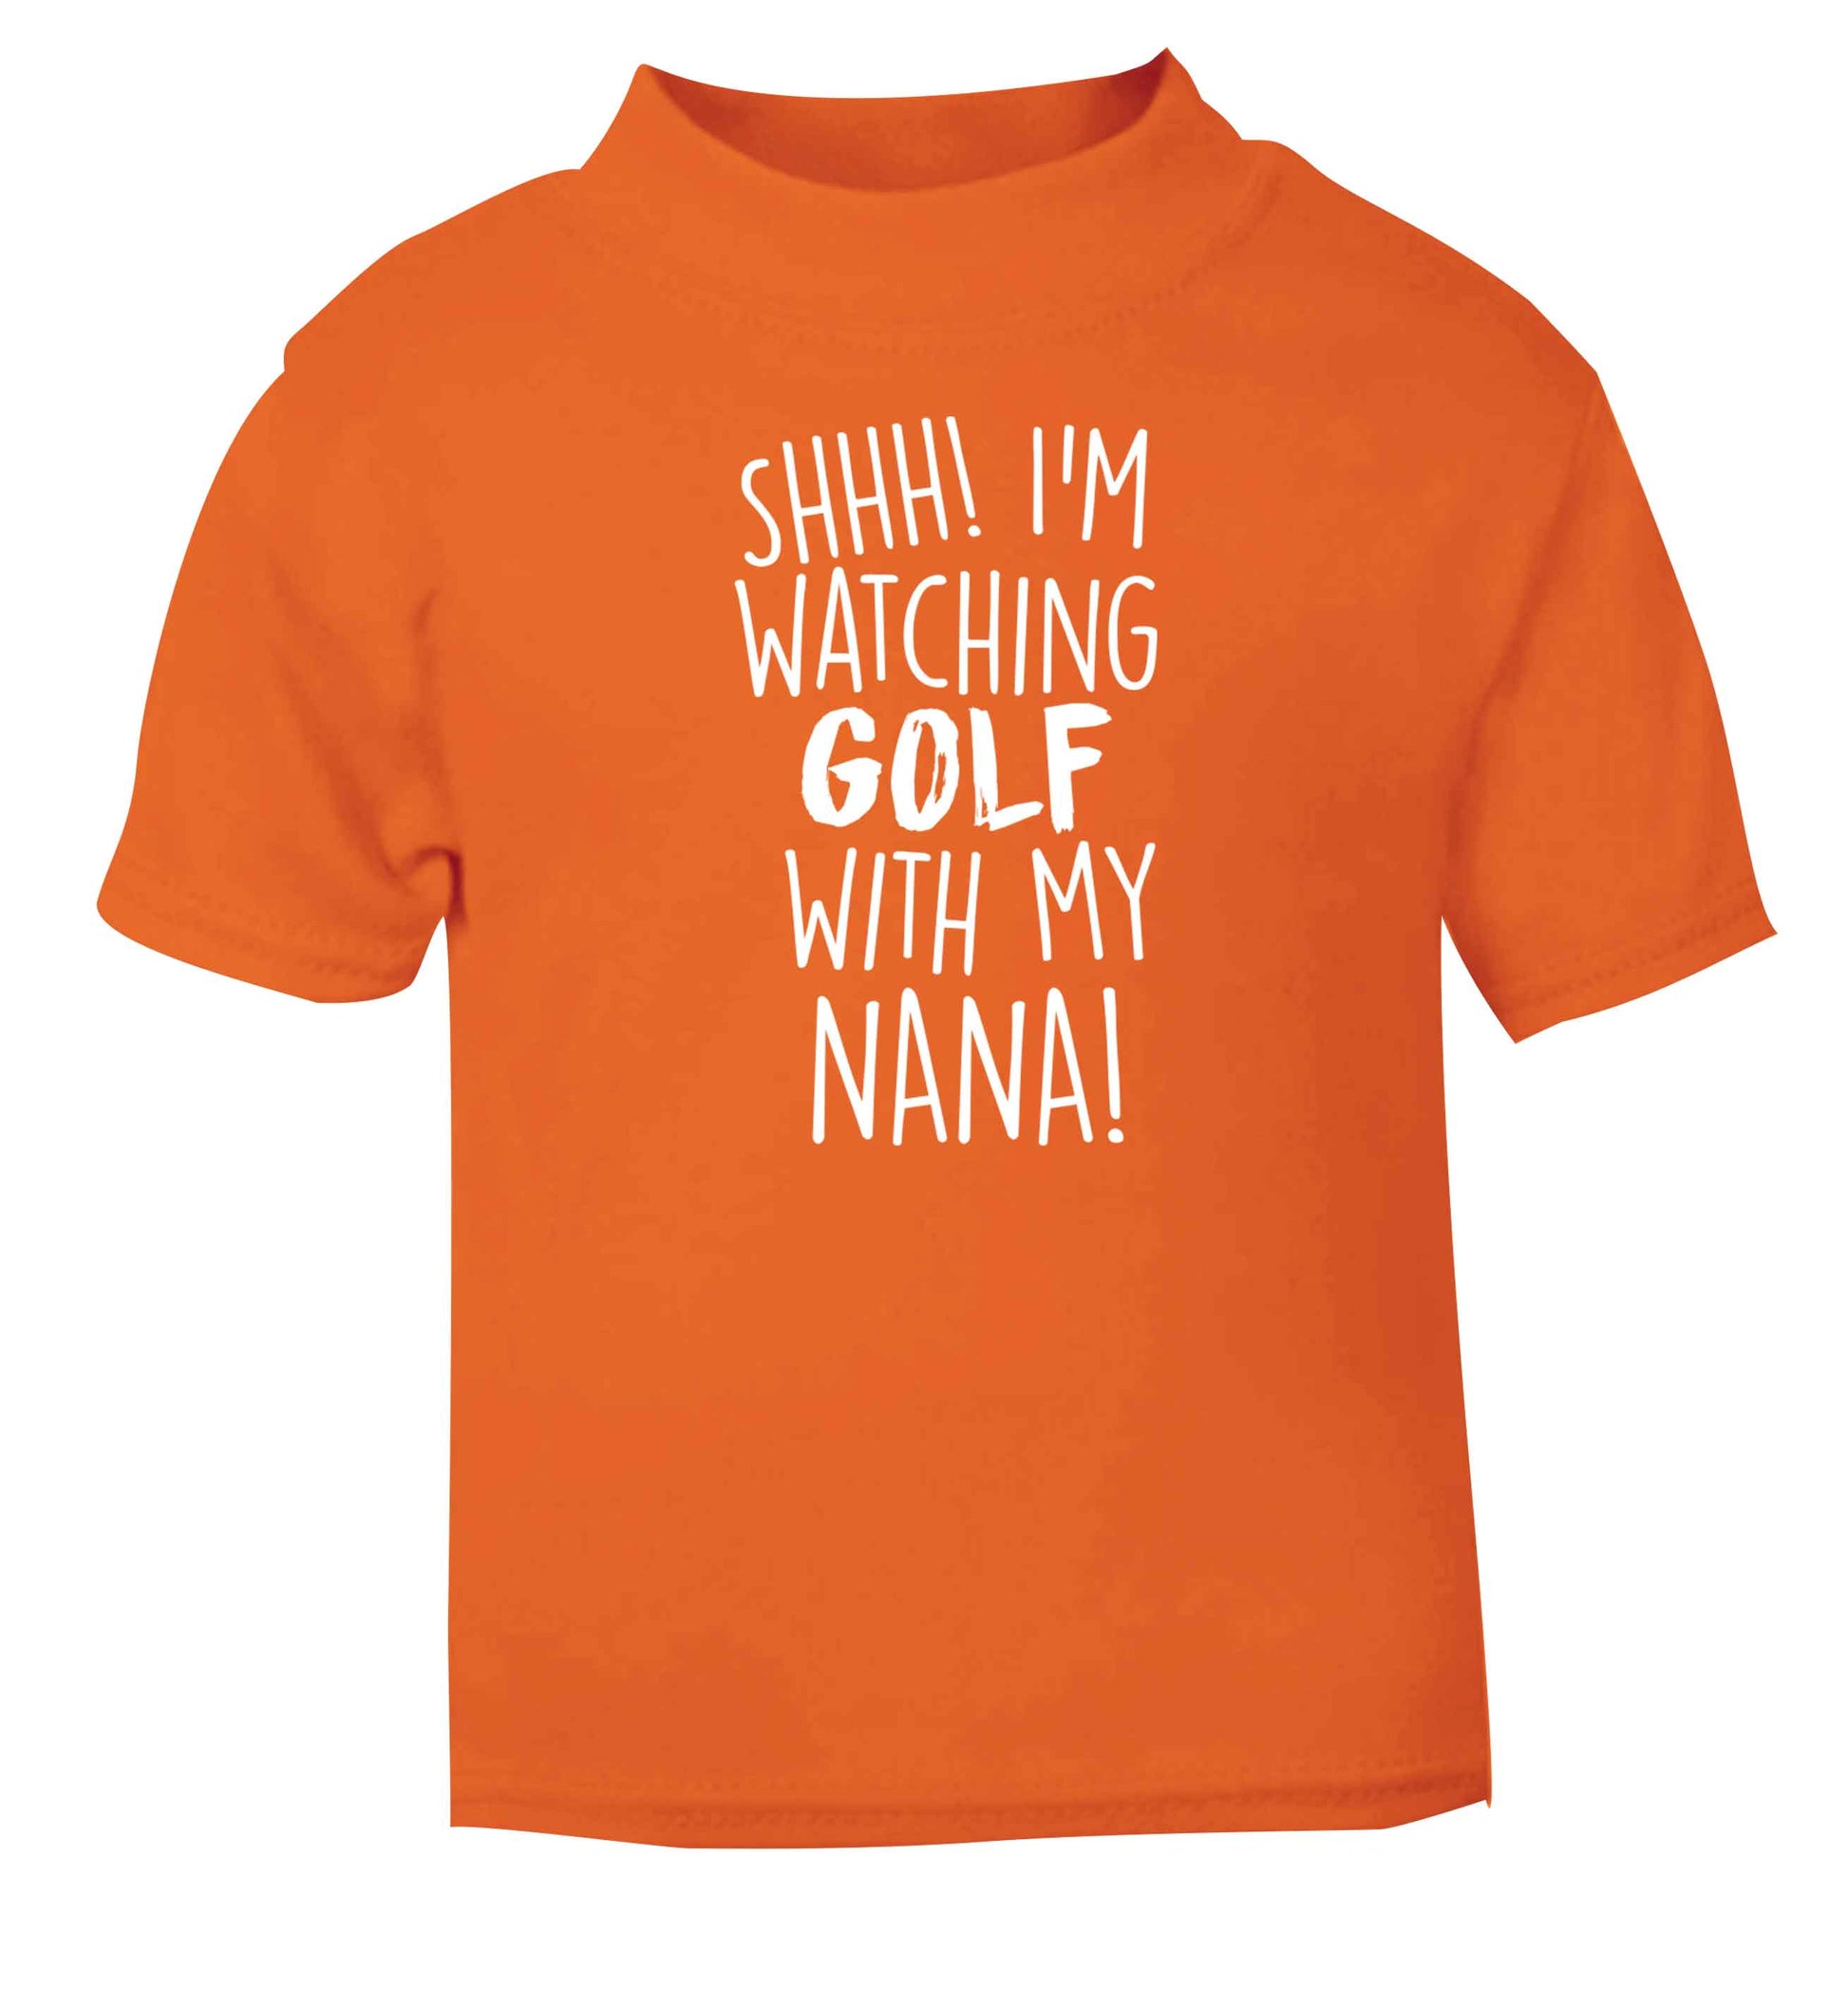 Shh I'm watching golf with my nana orange Baby Toddler Tshirt 2 Years